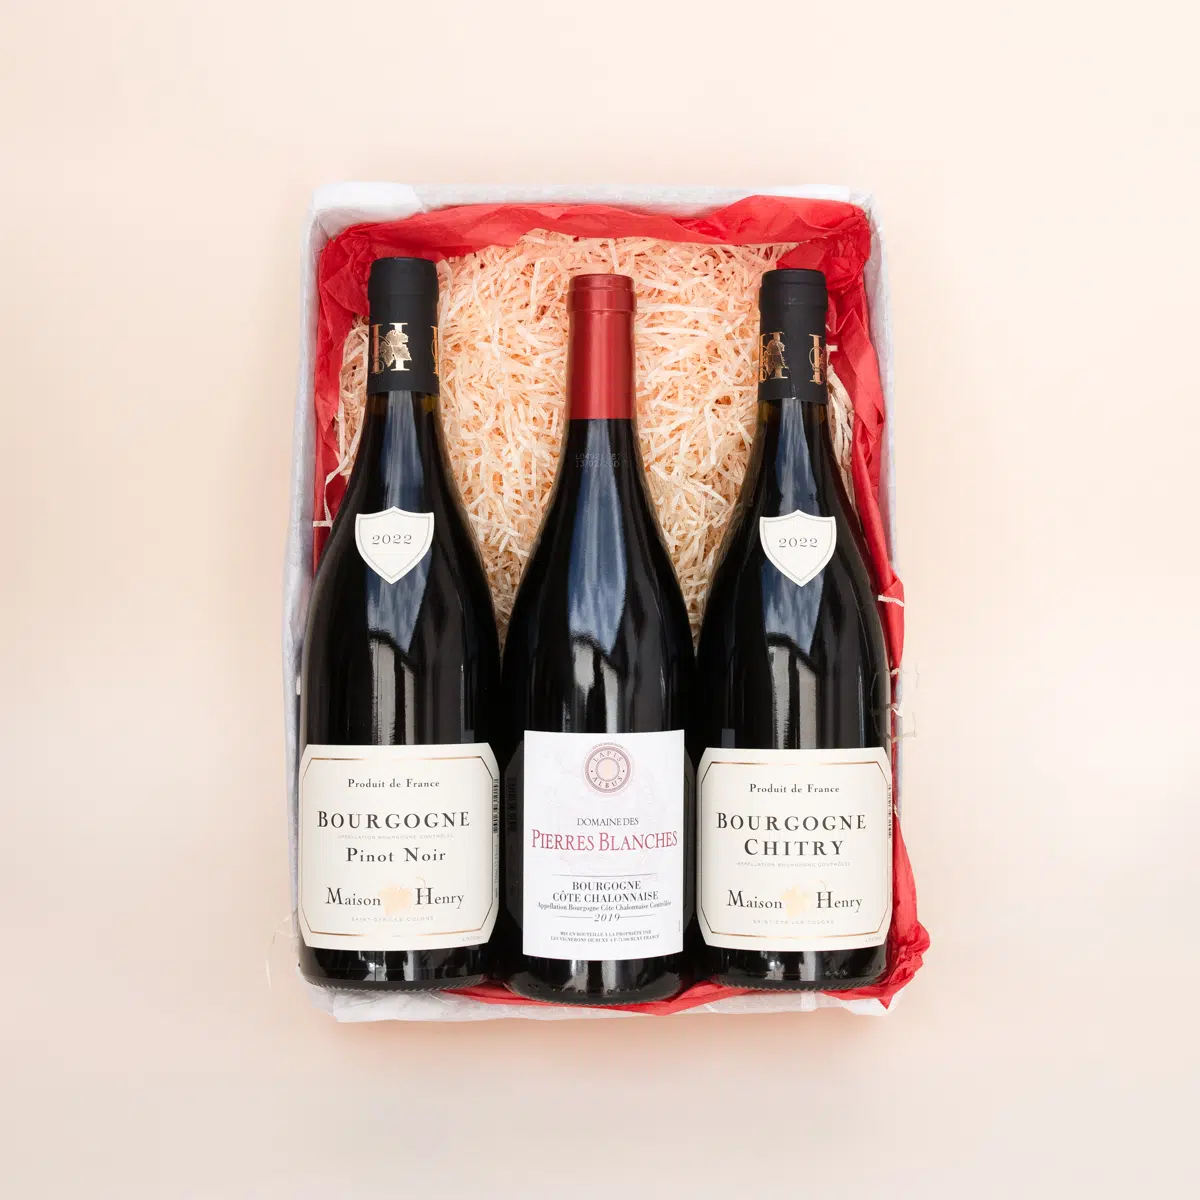 Coffret cadeau 3 bouteilles composé de 3 vins rouges de Bourgogne : 1 Pinot Noir, 1 Bourgogne Côte Chalonnaise, 1 Bourgogne Chitry